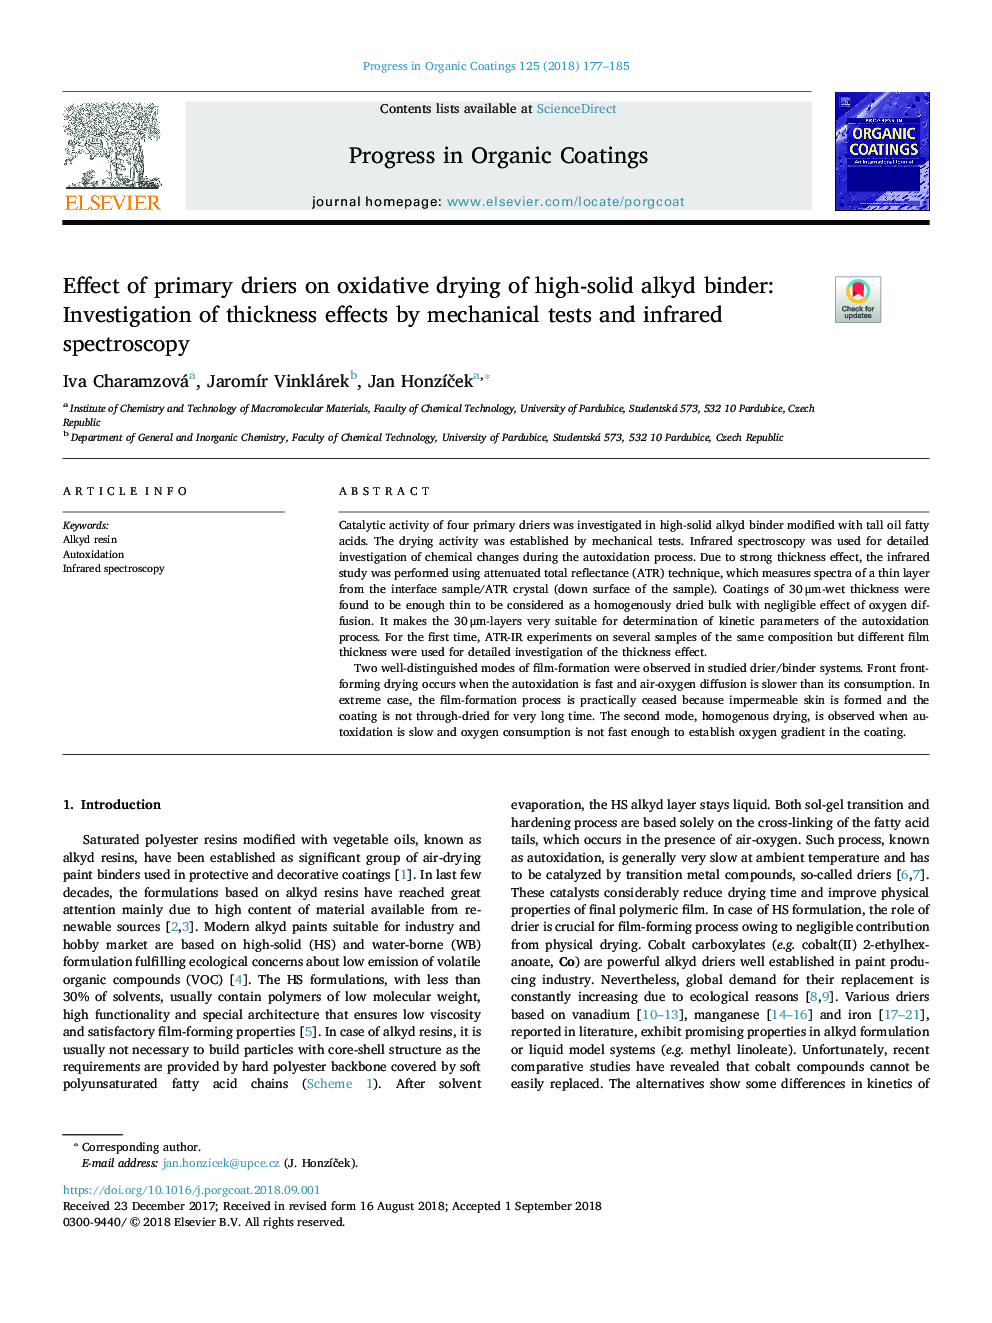 تأثیر خشک کن های اولیه بر خشک کردن اکسیداتیو باندینگ آلکیدی جامد: بررسی اثرات ضخامت توسط آزمایش های مکانیکی و طیف سنجی مادون قرمز